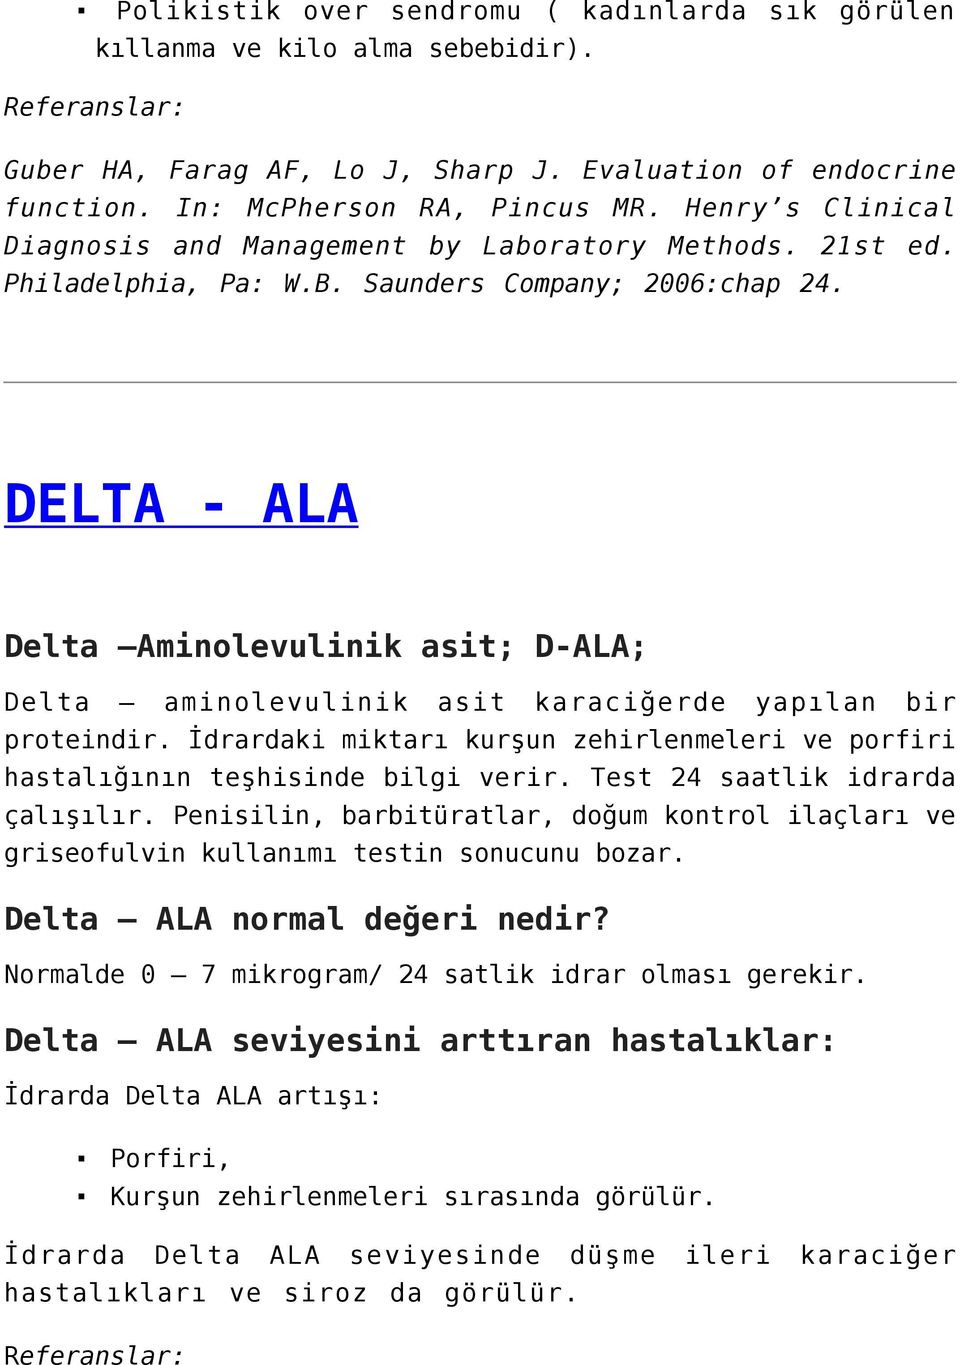 DELTA - ALA Delta Aminolevulinik asit; D-ALA; Delta aminolevulinik asit karaciğerde yapılan bir proteindir. İdrardaki miktarı kurşun zehirlenmeleri ve porfiri hastalığının teşhisinde bilgi verir.